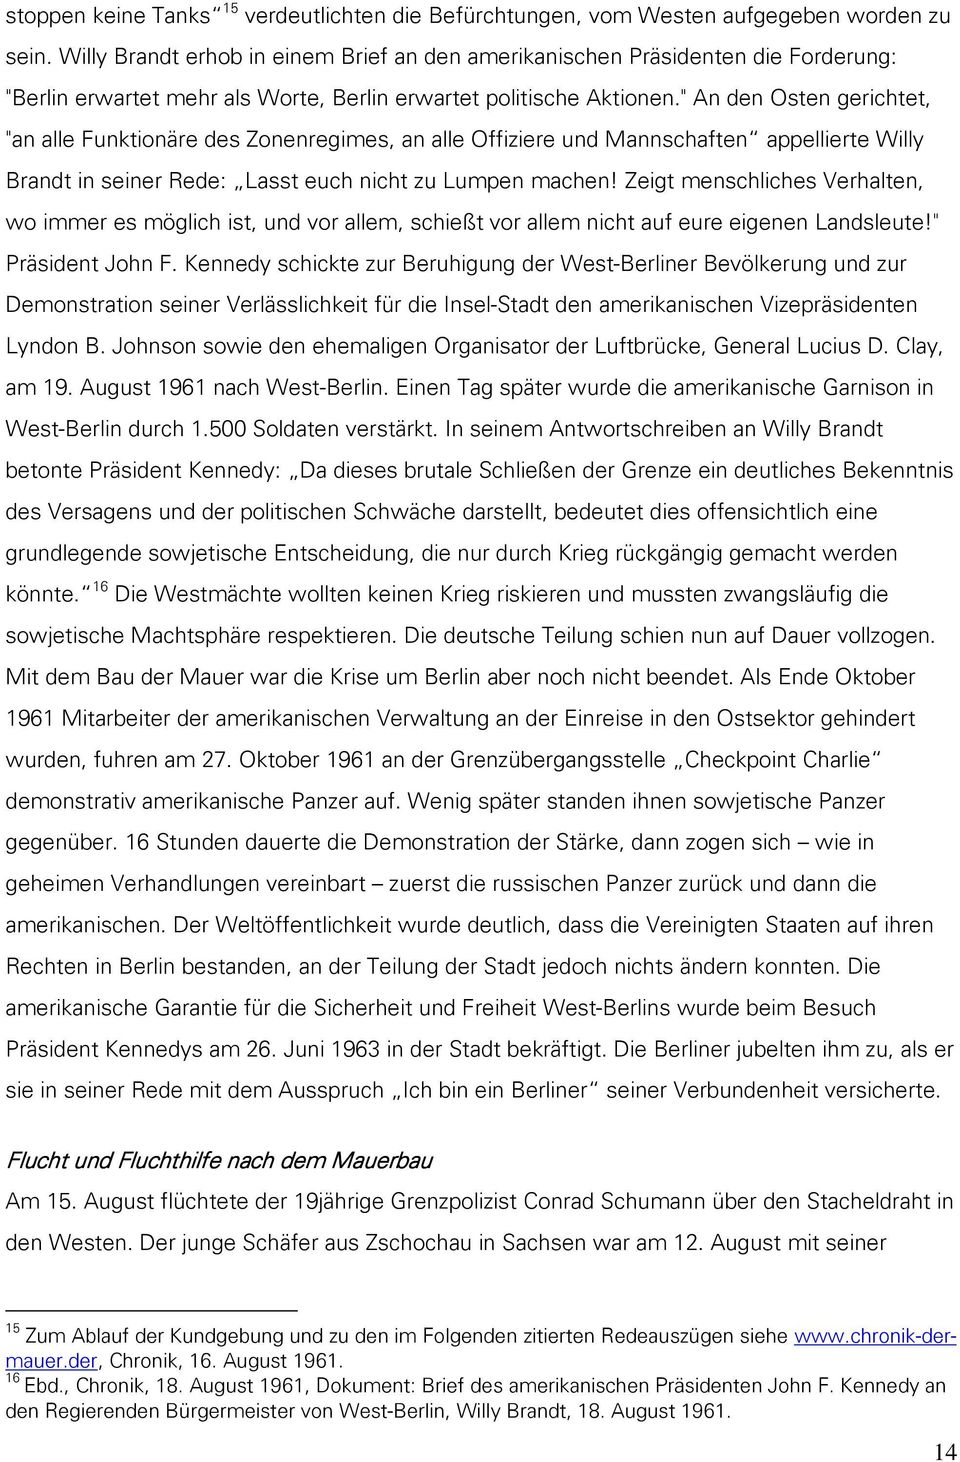 " An den Osten gerichtet, "an alle Funktionäre des Zonenregimes, an alle Offiziere und Mannschaften appellierte Willy Brandt in seiner Rede: Lasst euch nicht zu Lumpen machen!